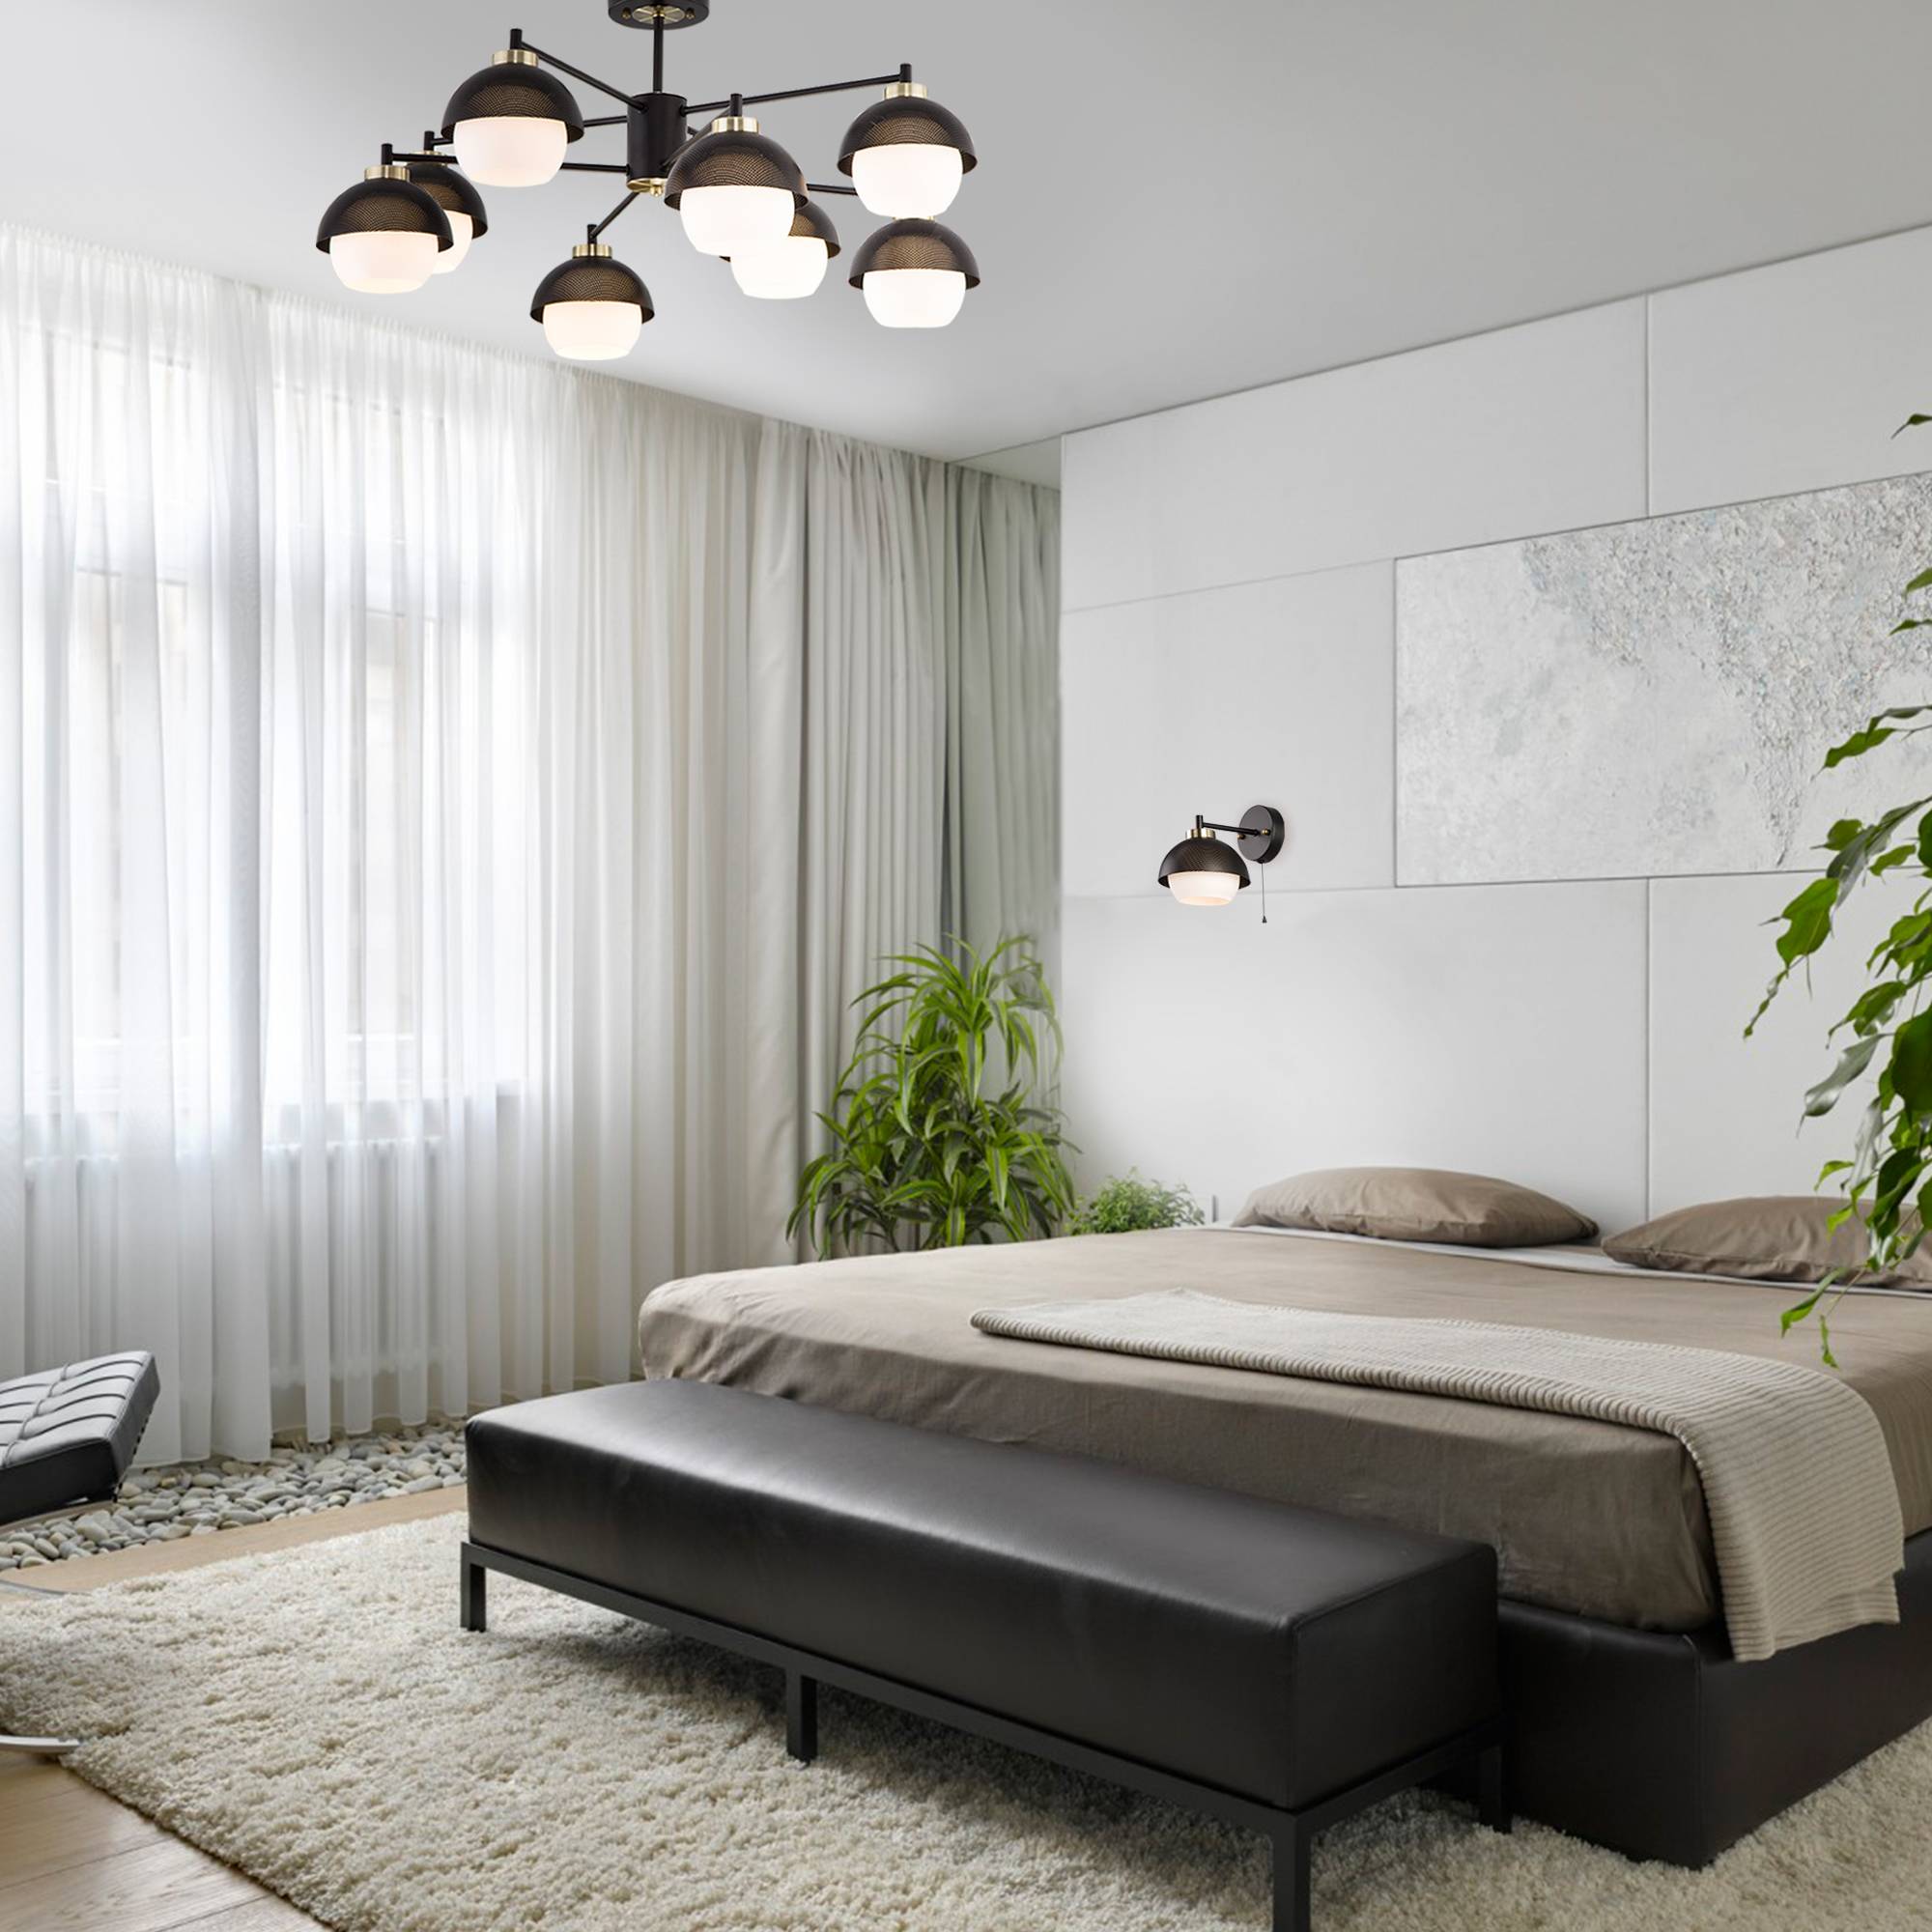 Спальня в стиле минимализм 2017, 93 фото дизайна интерьера | the architect